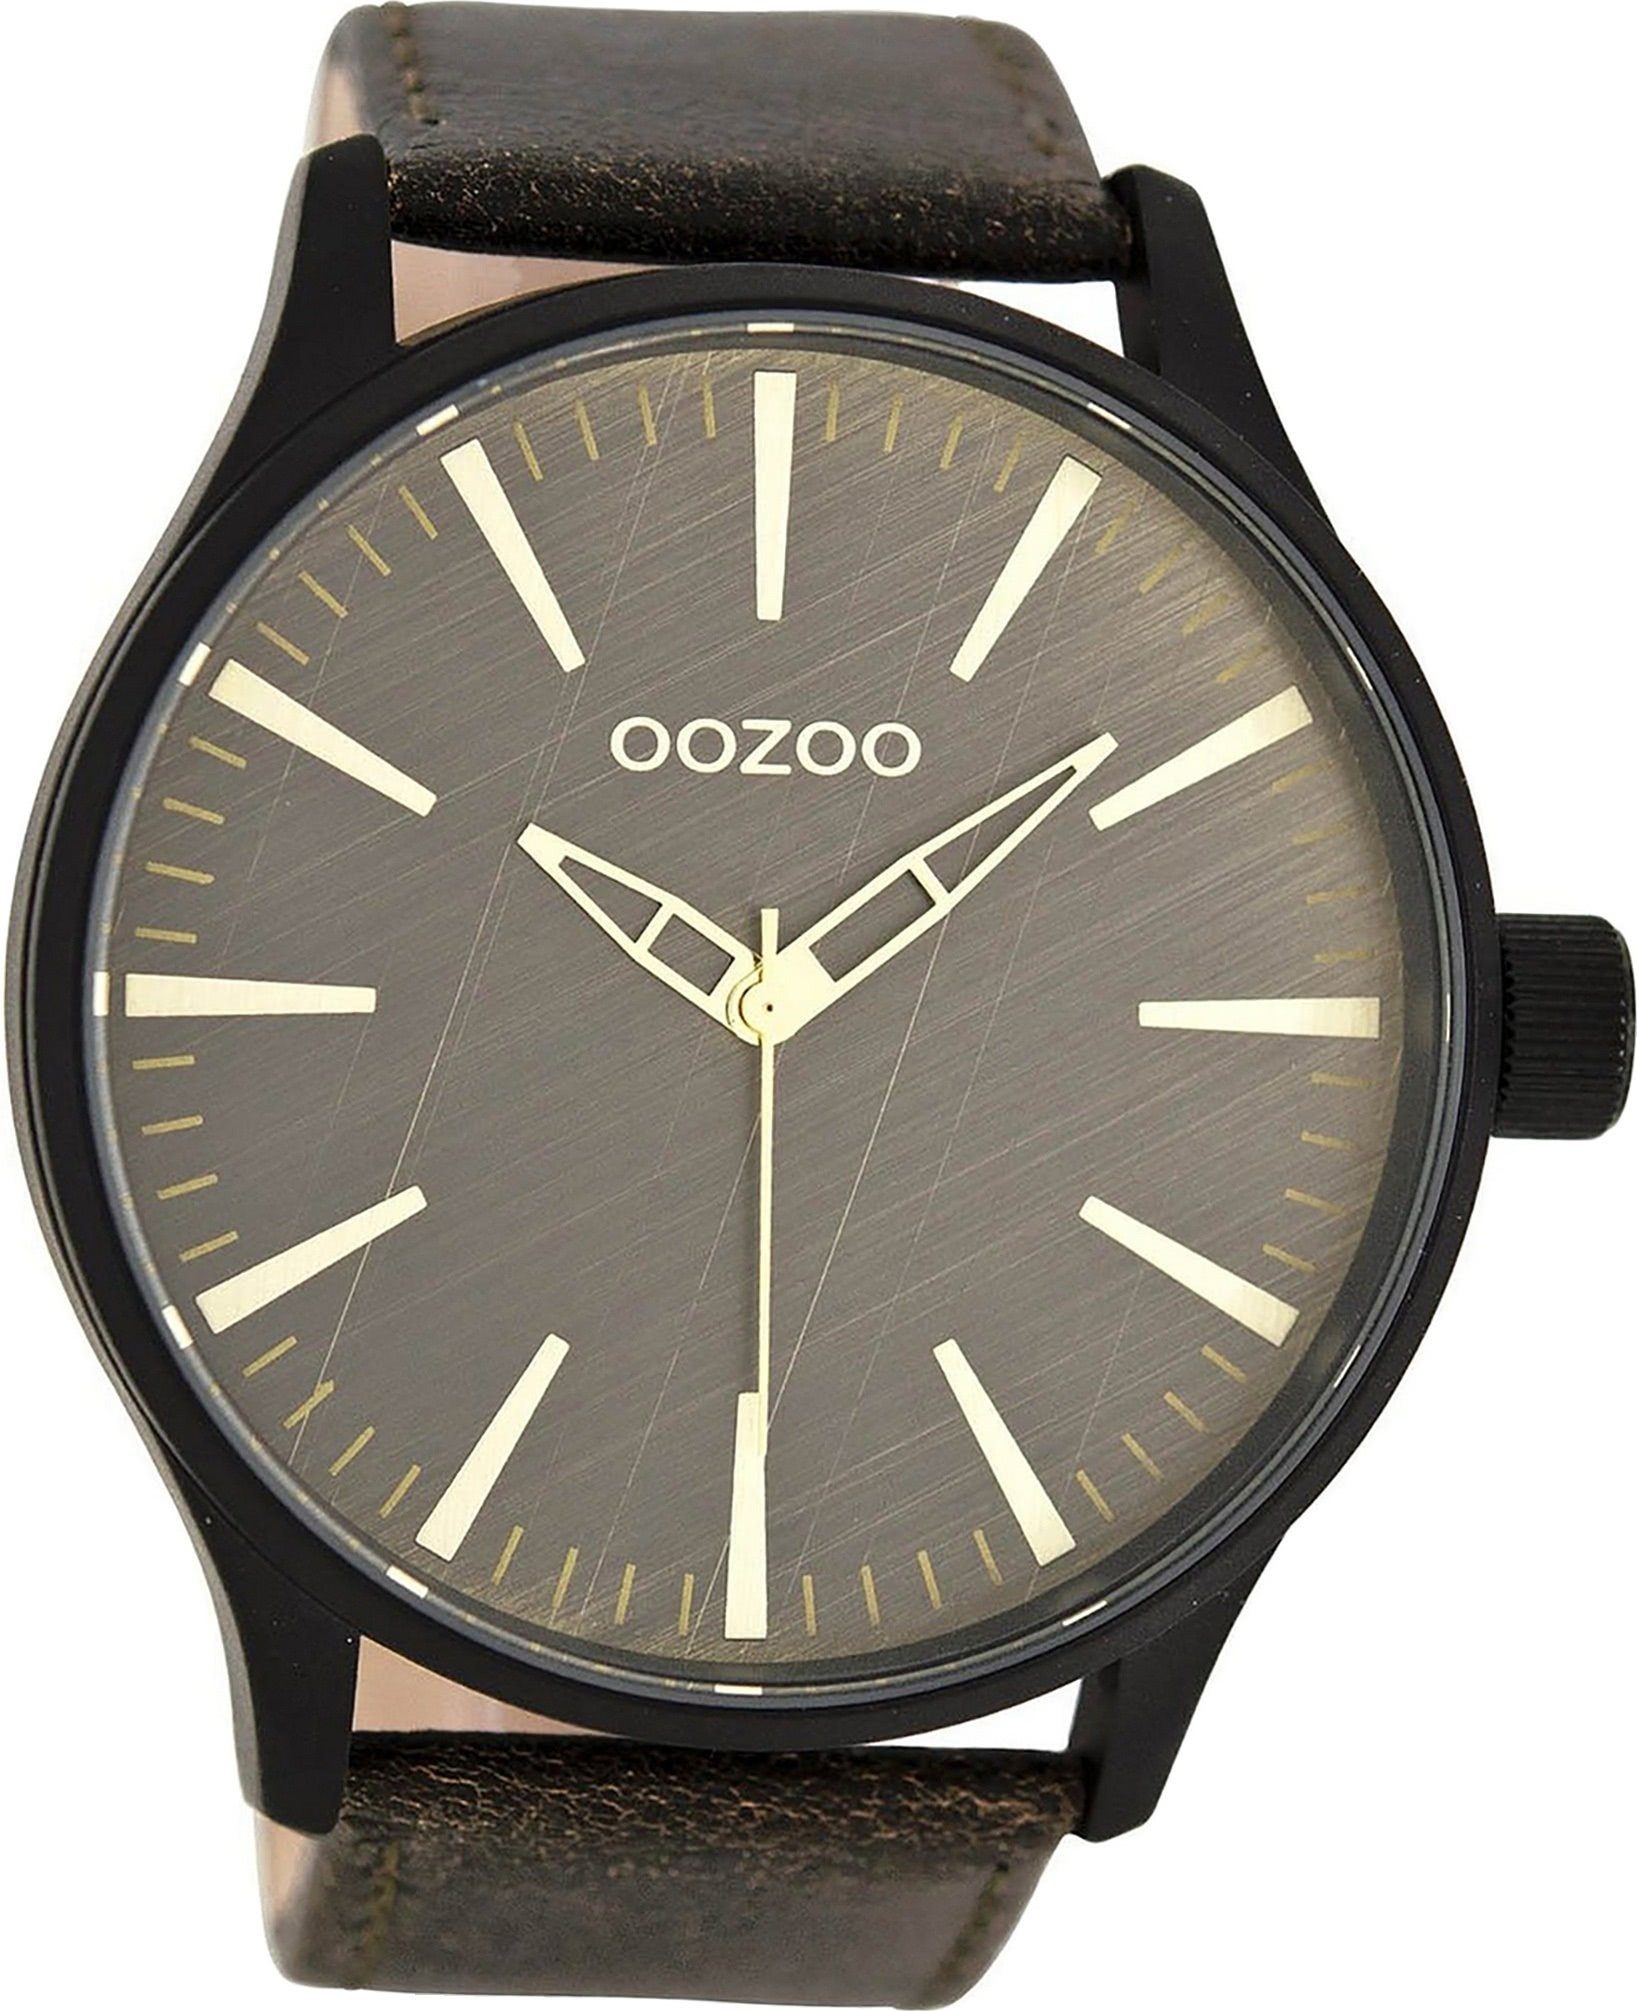 OOZOO Quarzuhr Oozoo Quarzuhr Herren schwarz Timepieces, Herrenuhr Lederarmband braun, rundes Gehäuse, extra groß (ca. 50mm)